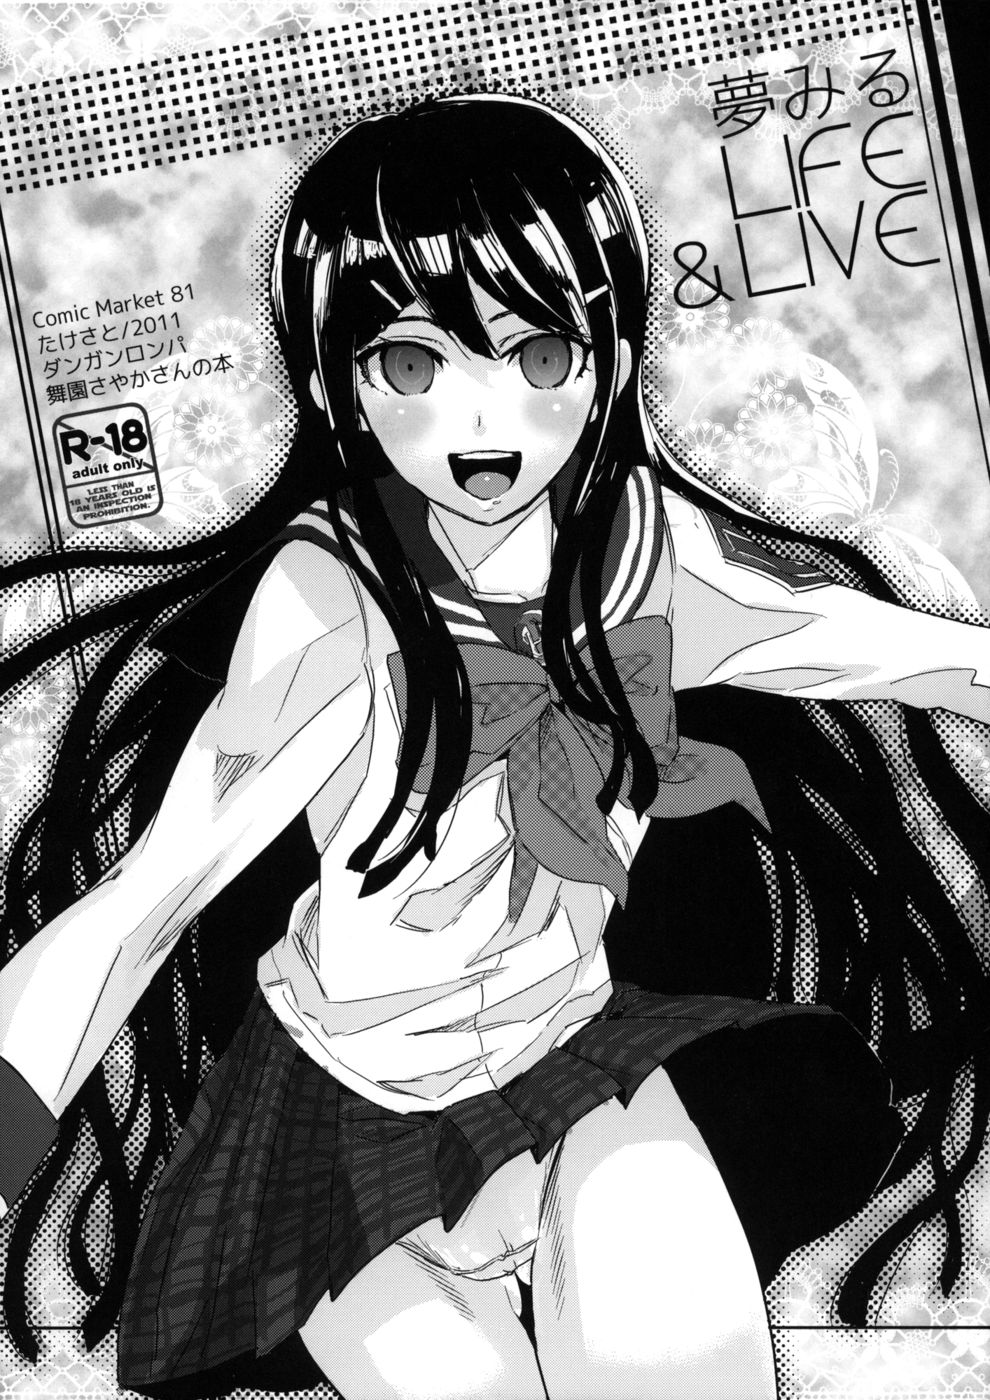 Hentai Manga Comic-Yume Miru Life & Live-Read-1